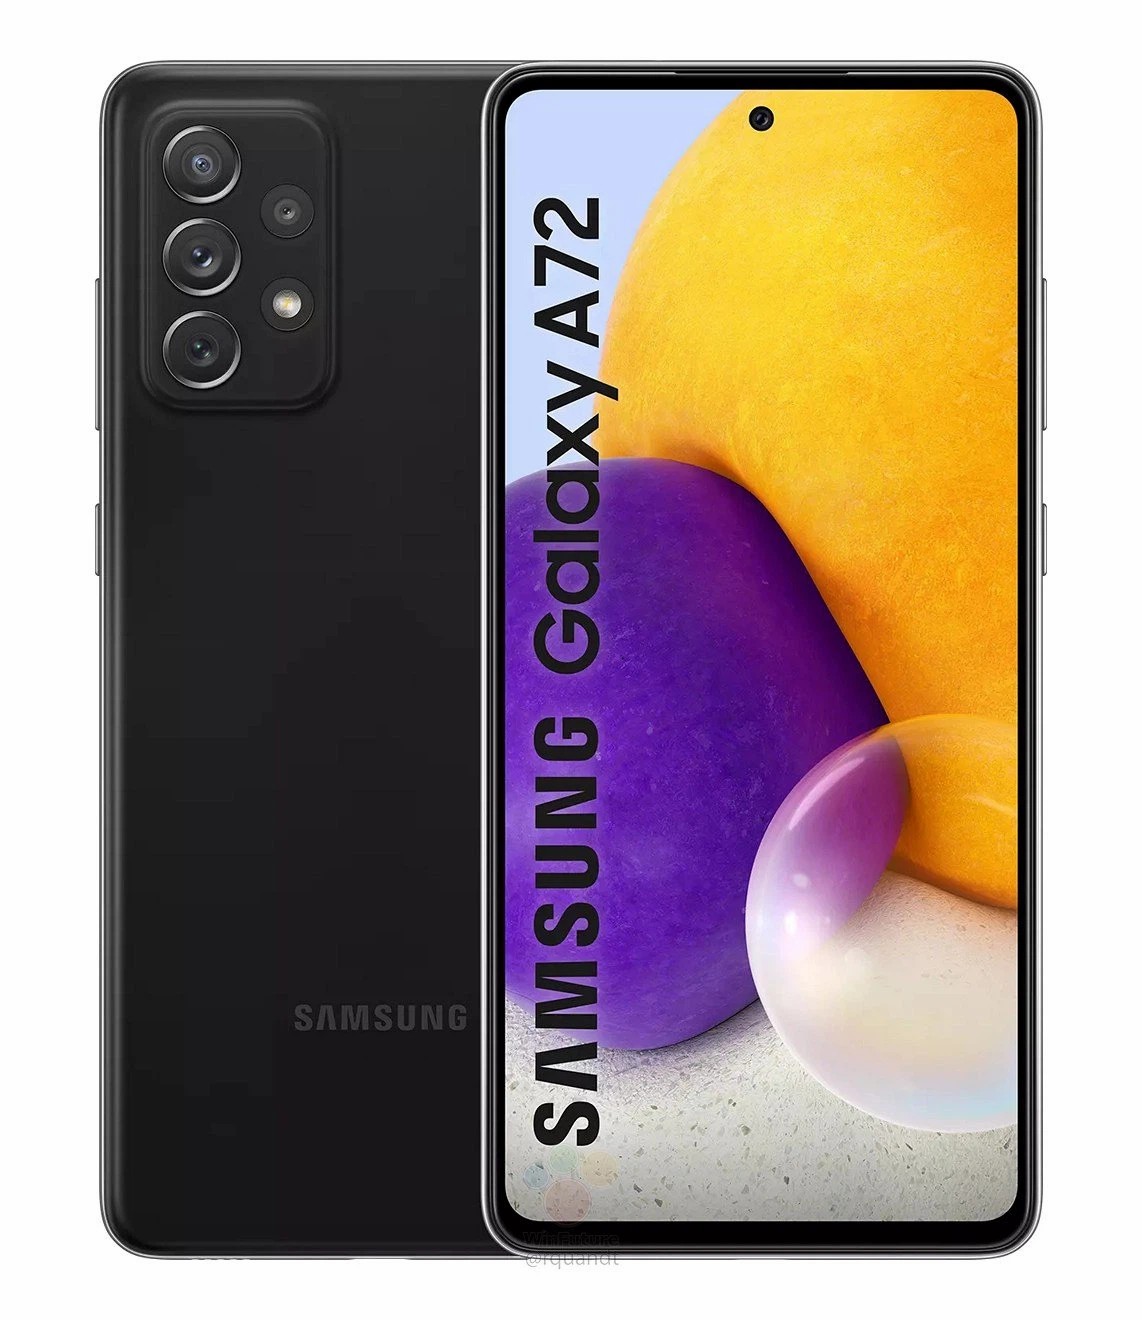 Galaxy A72 4G lộ diện: Thiết kế trẻ trung với nhiều tuỳ chọn màu sắc, Snapdragon 720G, giá khoảng 12.5 triệu đồng